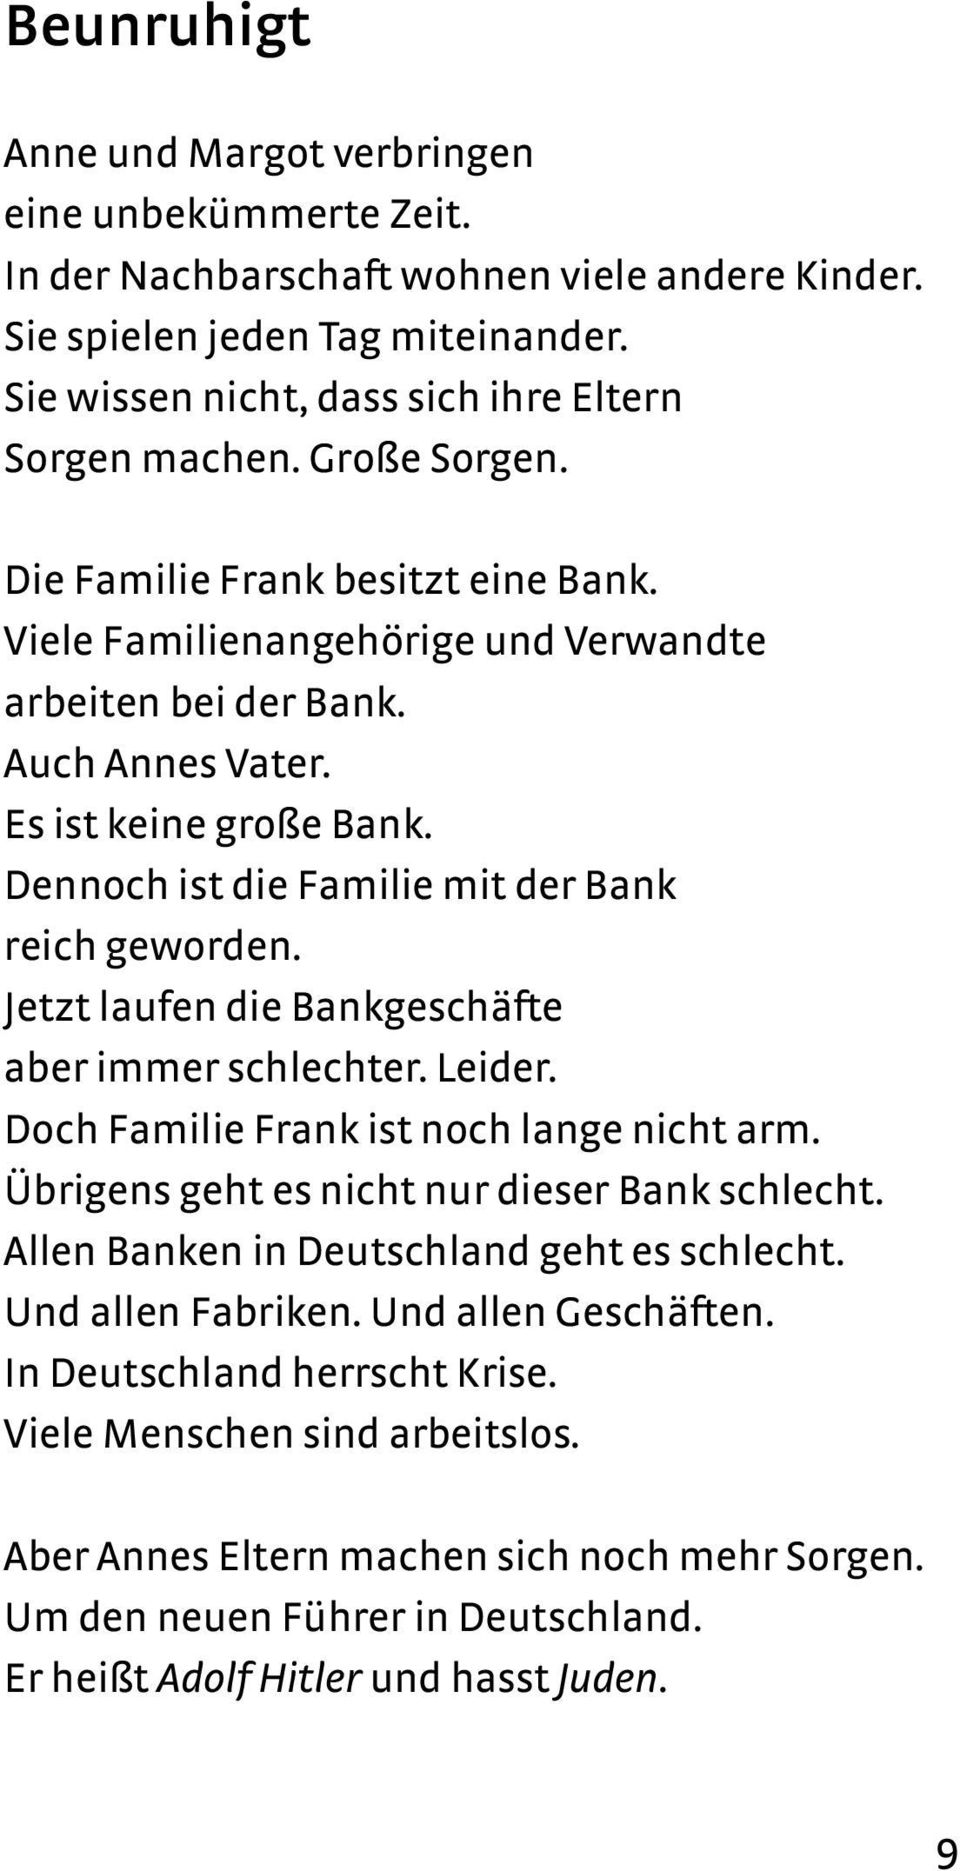 Dennoch ist die Familie mit der Bank reich geworden. Jetzt laufen die Bankgeschäfte aber immer schlechter. Leider. Doch Familie Frank ist noch lange nicht arm.